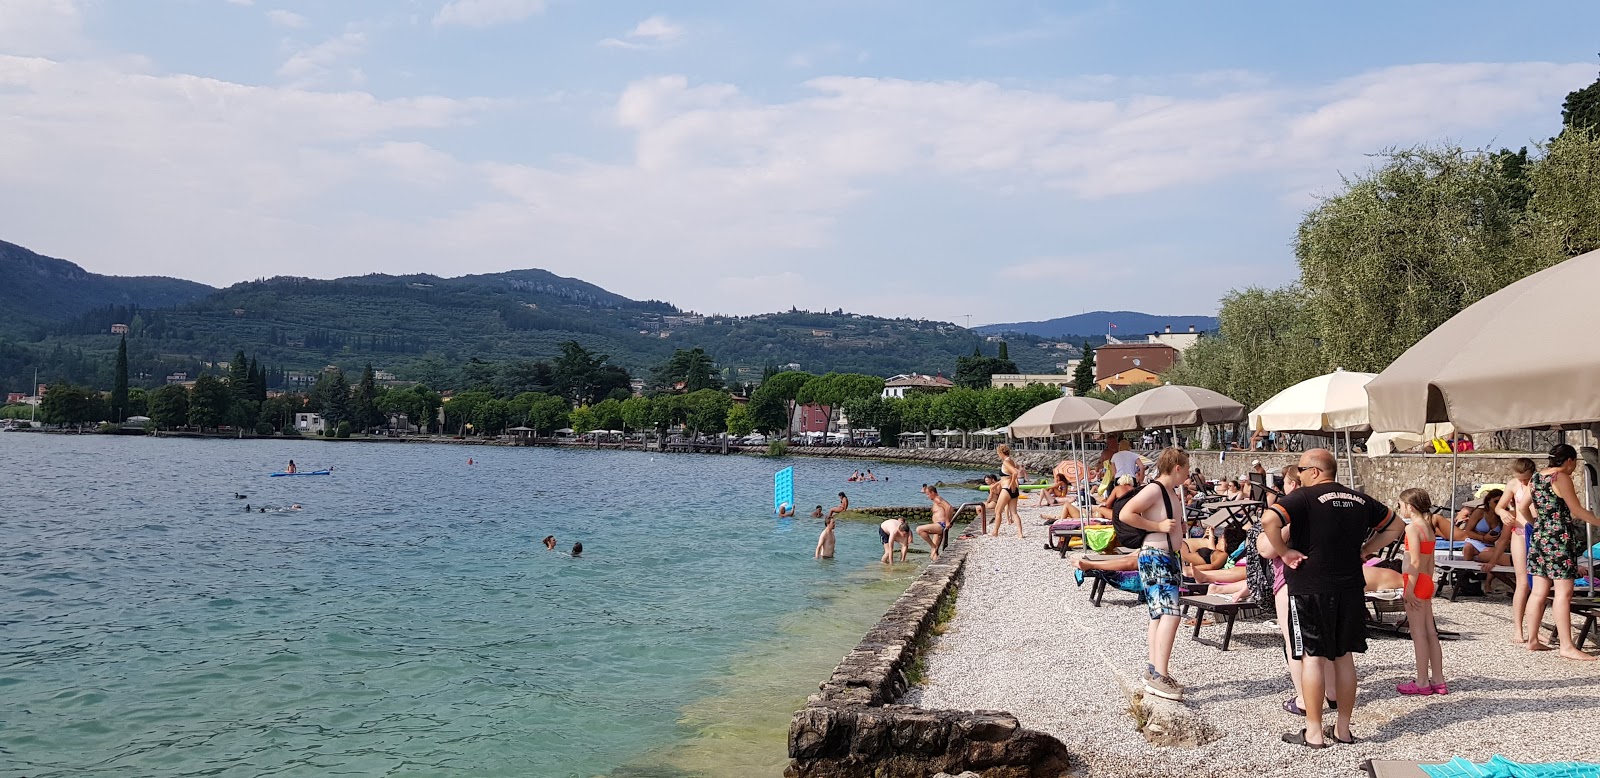 Foto af Spiaggia La Cavalla Garda - populært sted blandt afslapningskendere